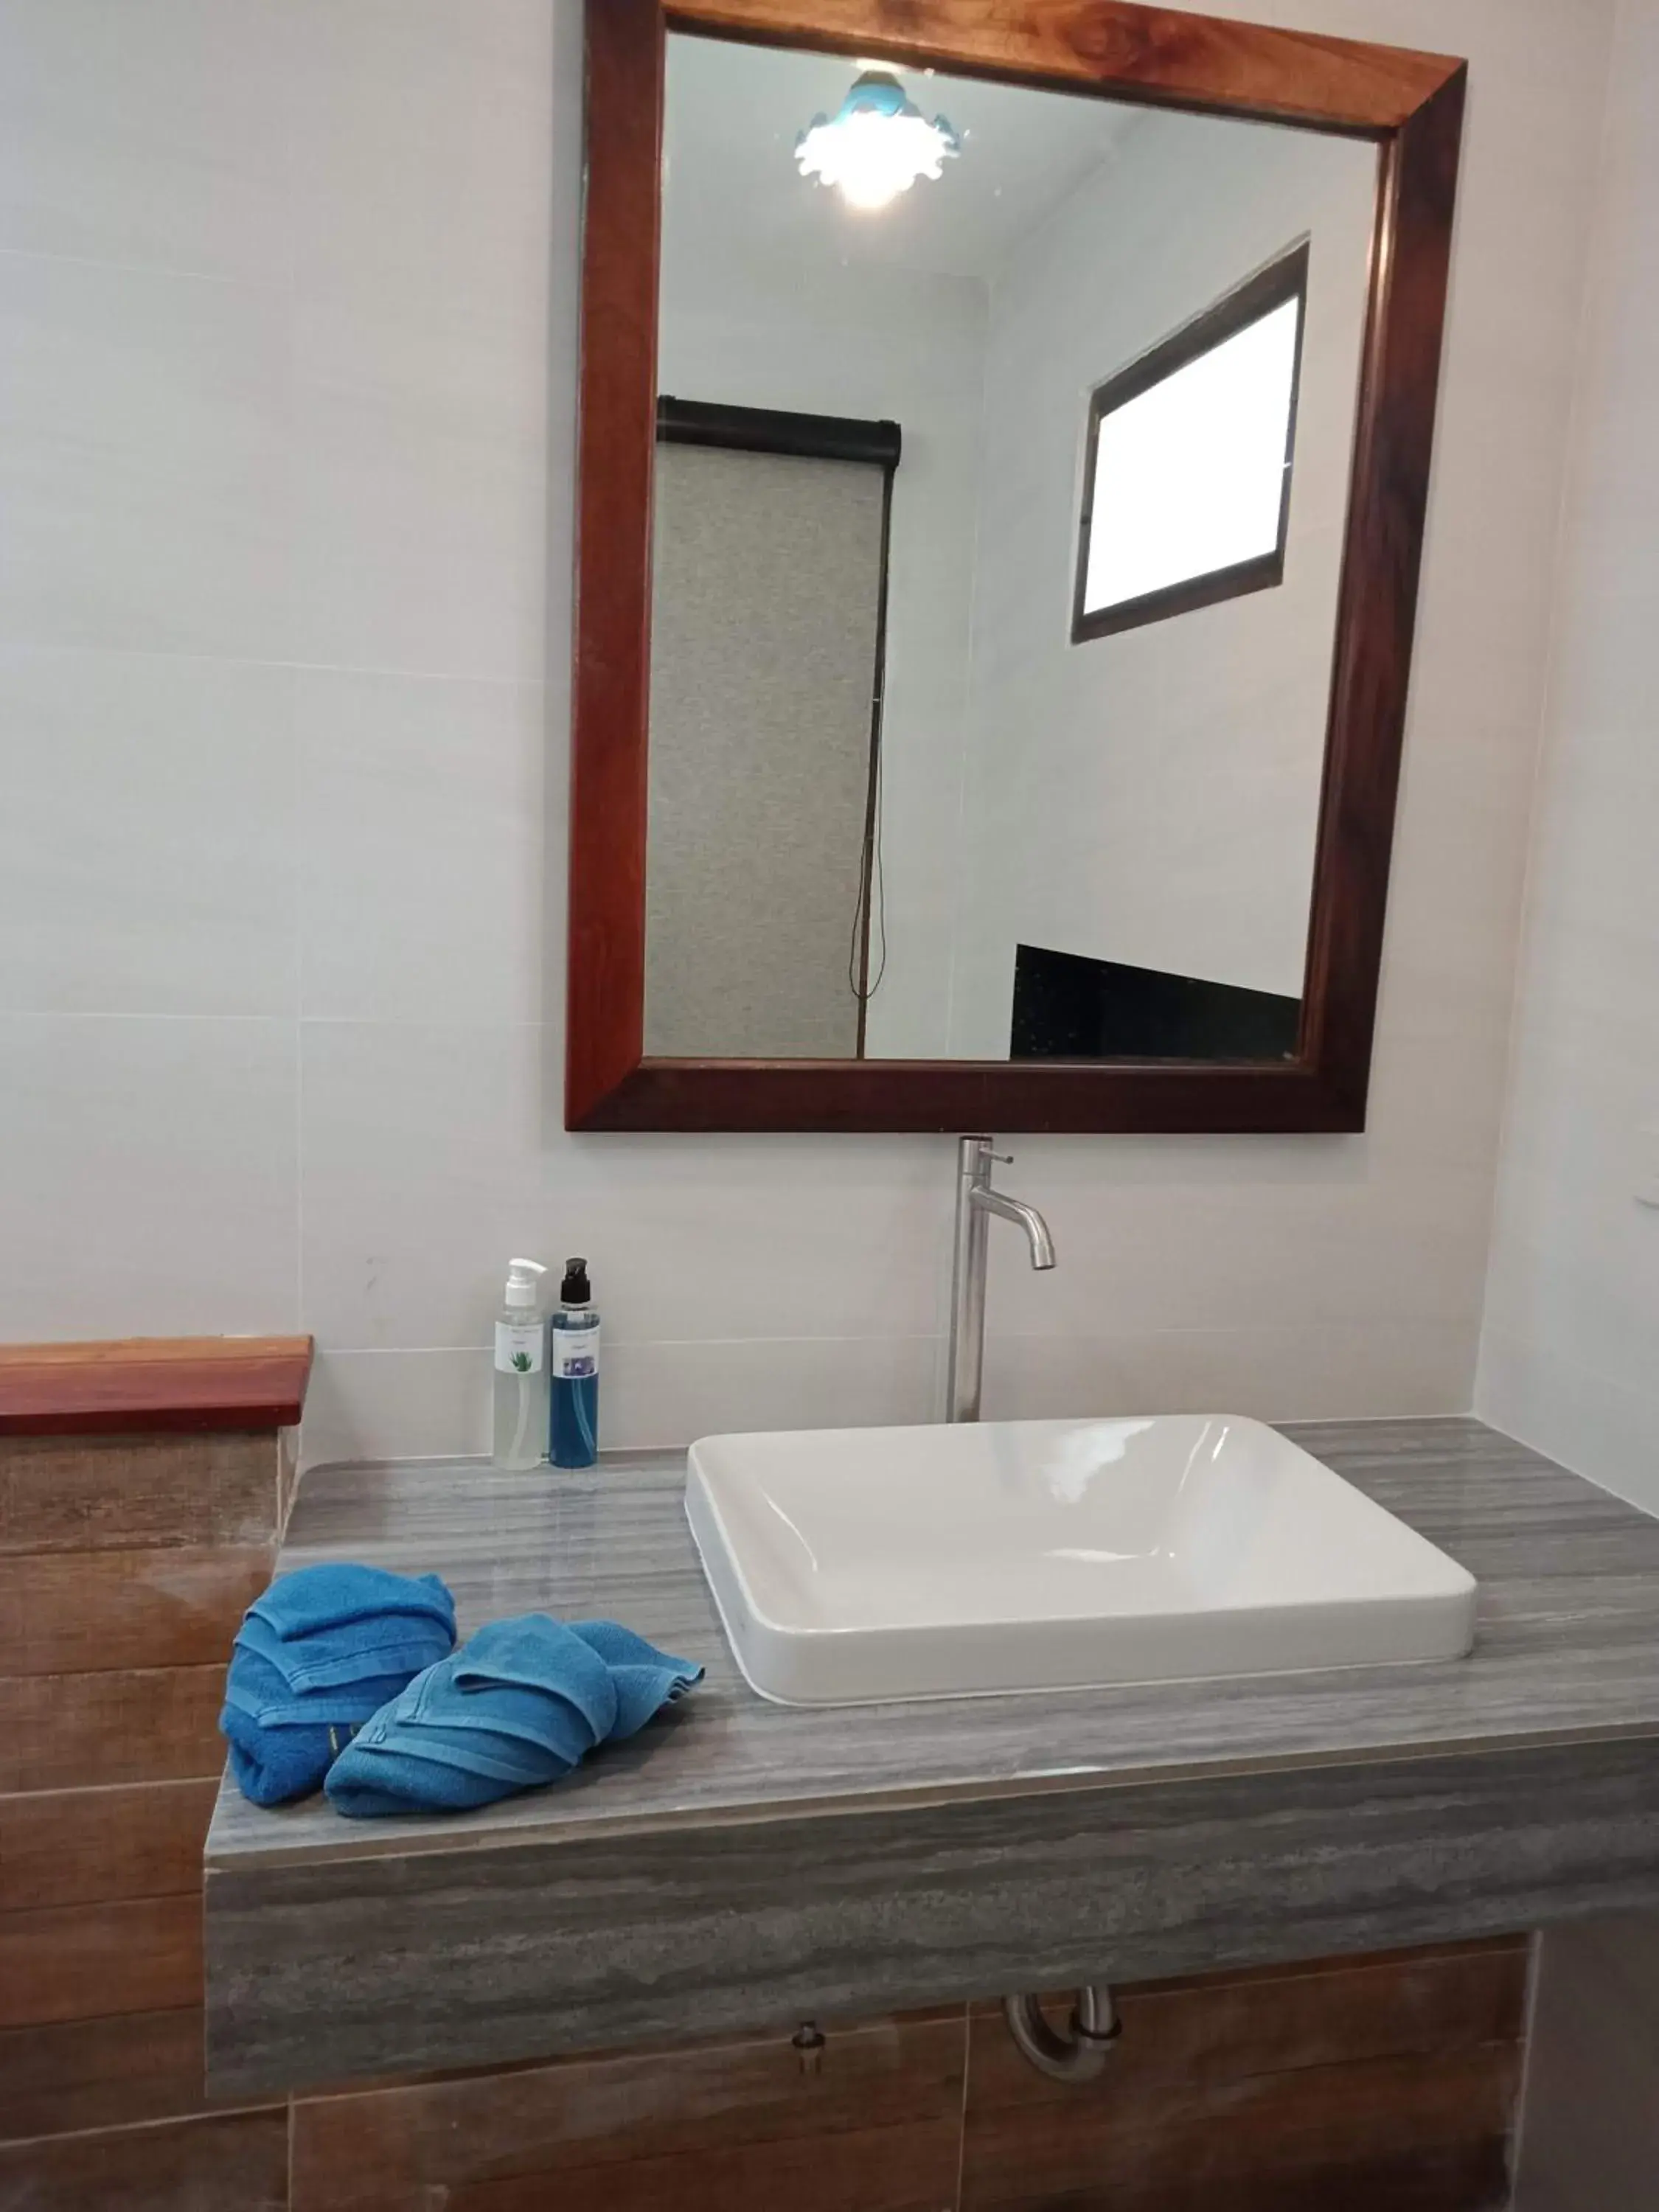 Area and facilities, Bathroom in D.R. Lanta Bay Resort